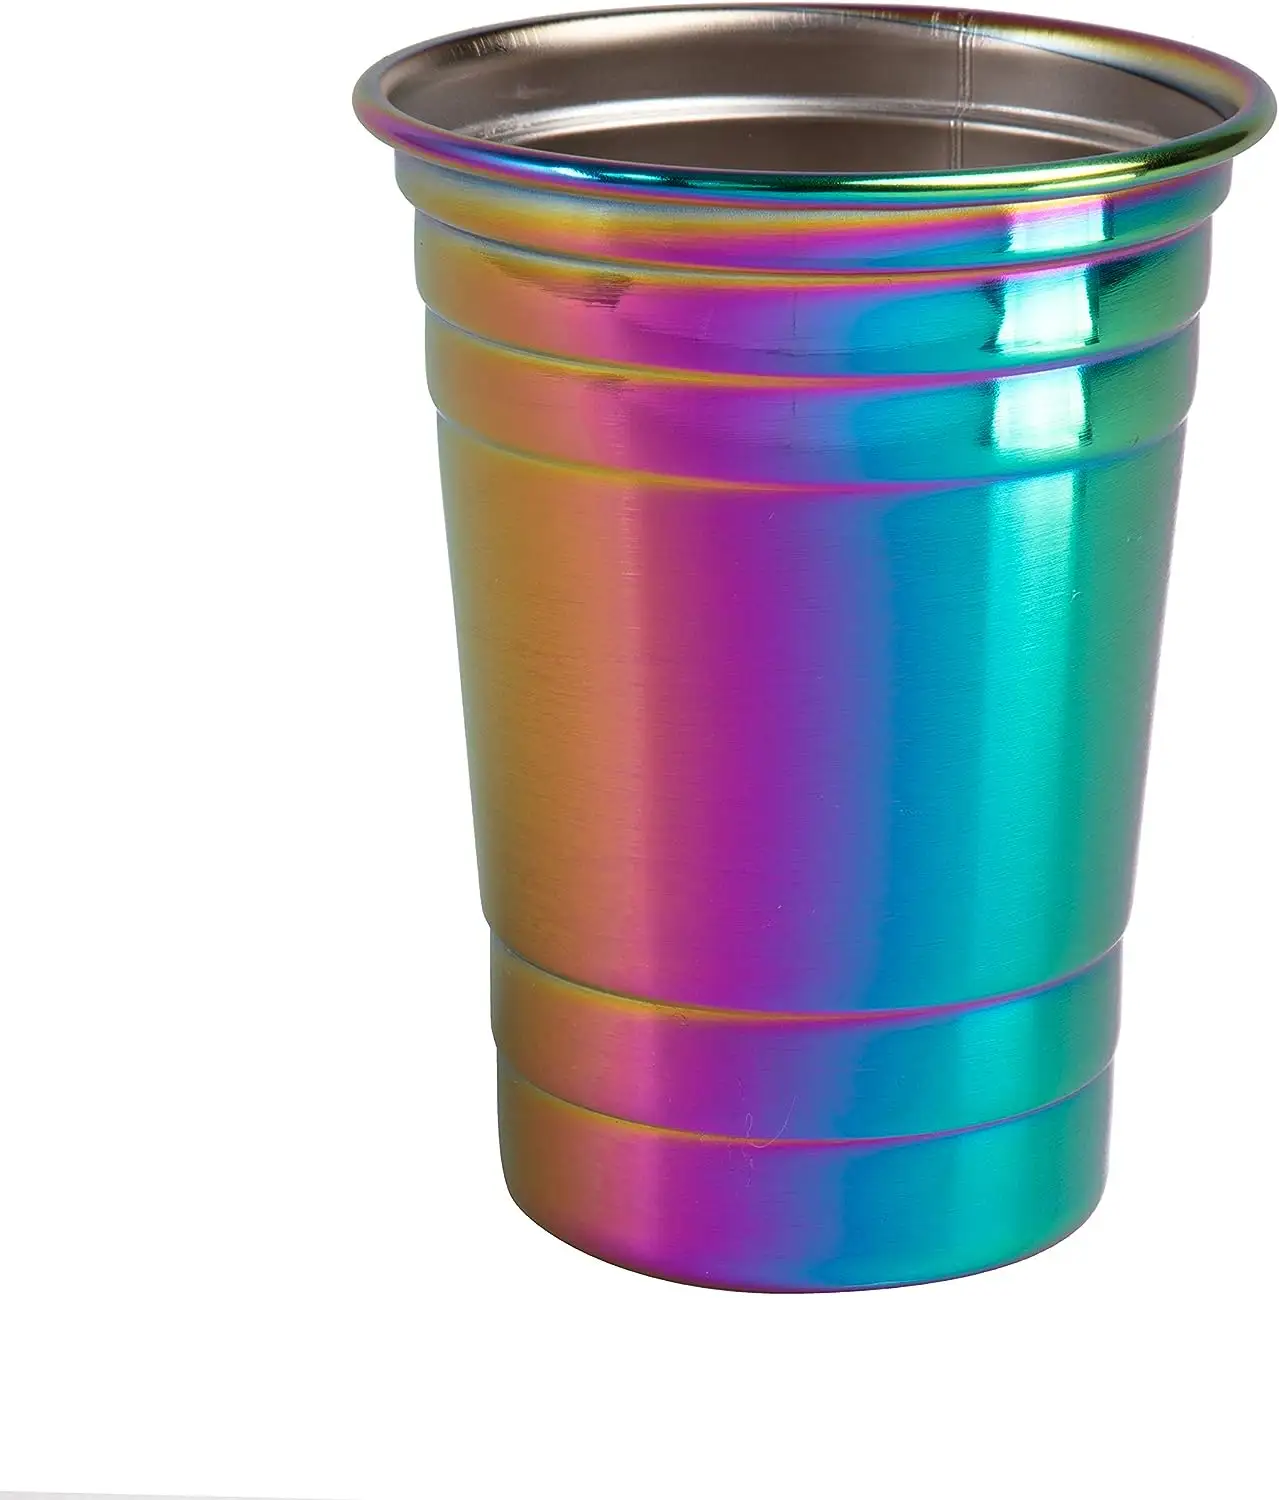 Unbreakable Iridescent Stainless Steel Party Cups Shatterproof Reusable Rainbow Glasses Indoor Outdoor Drinkware